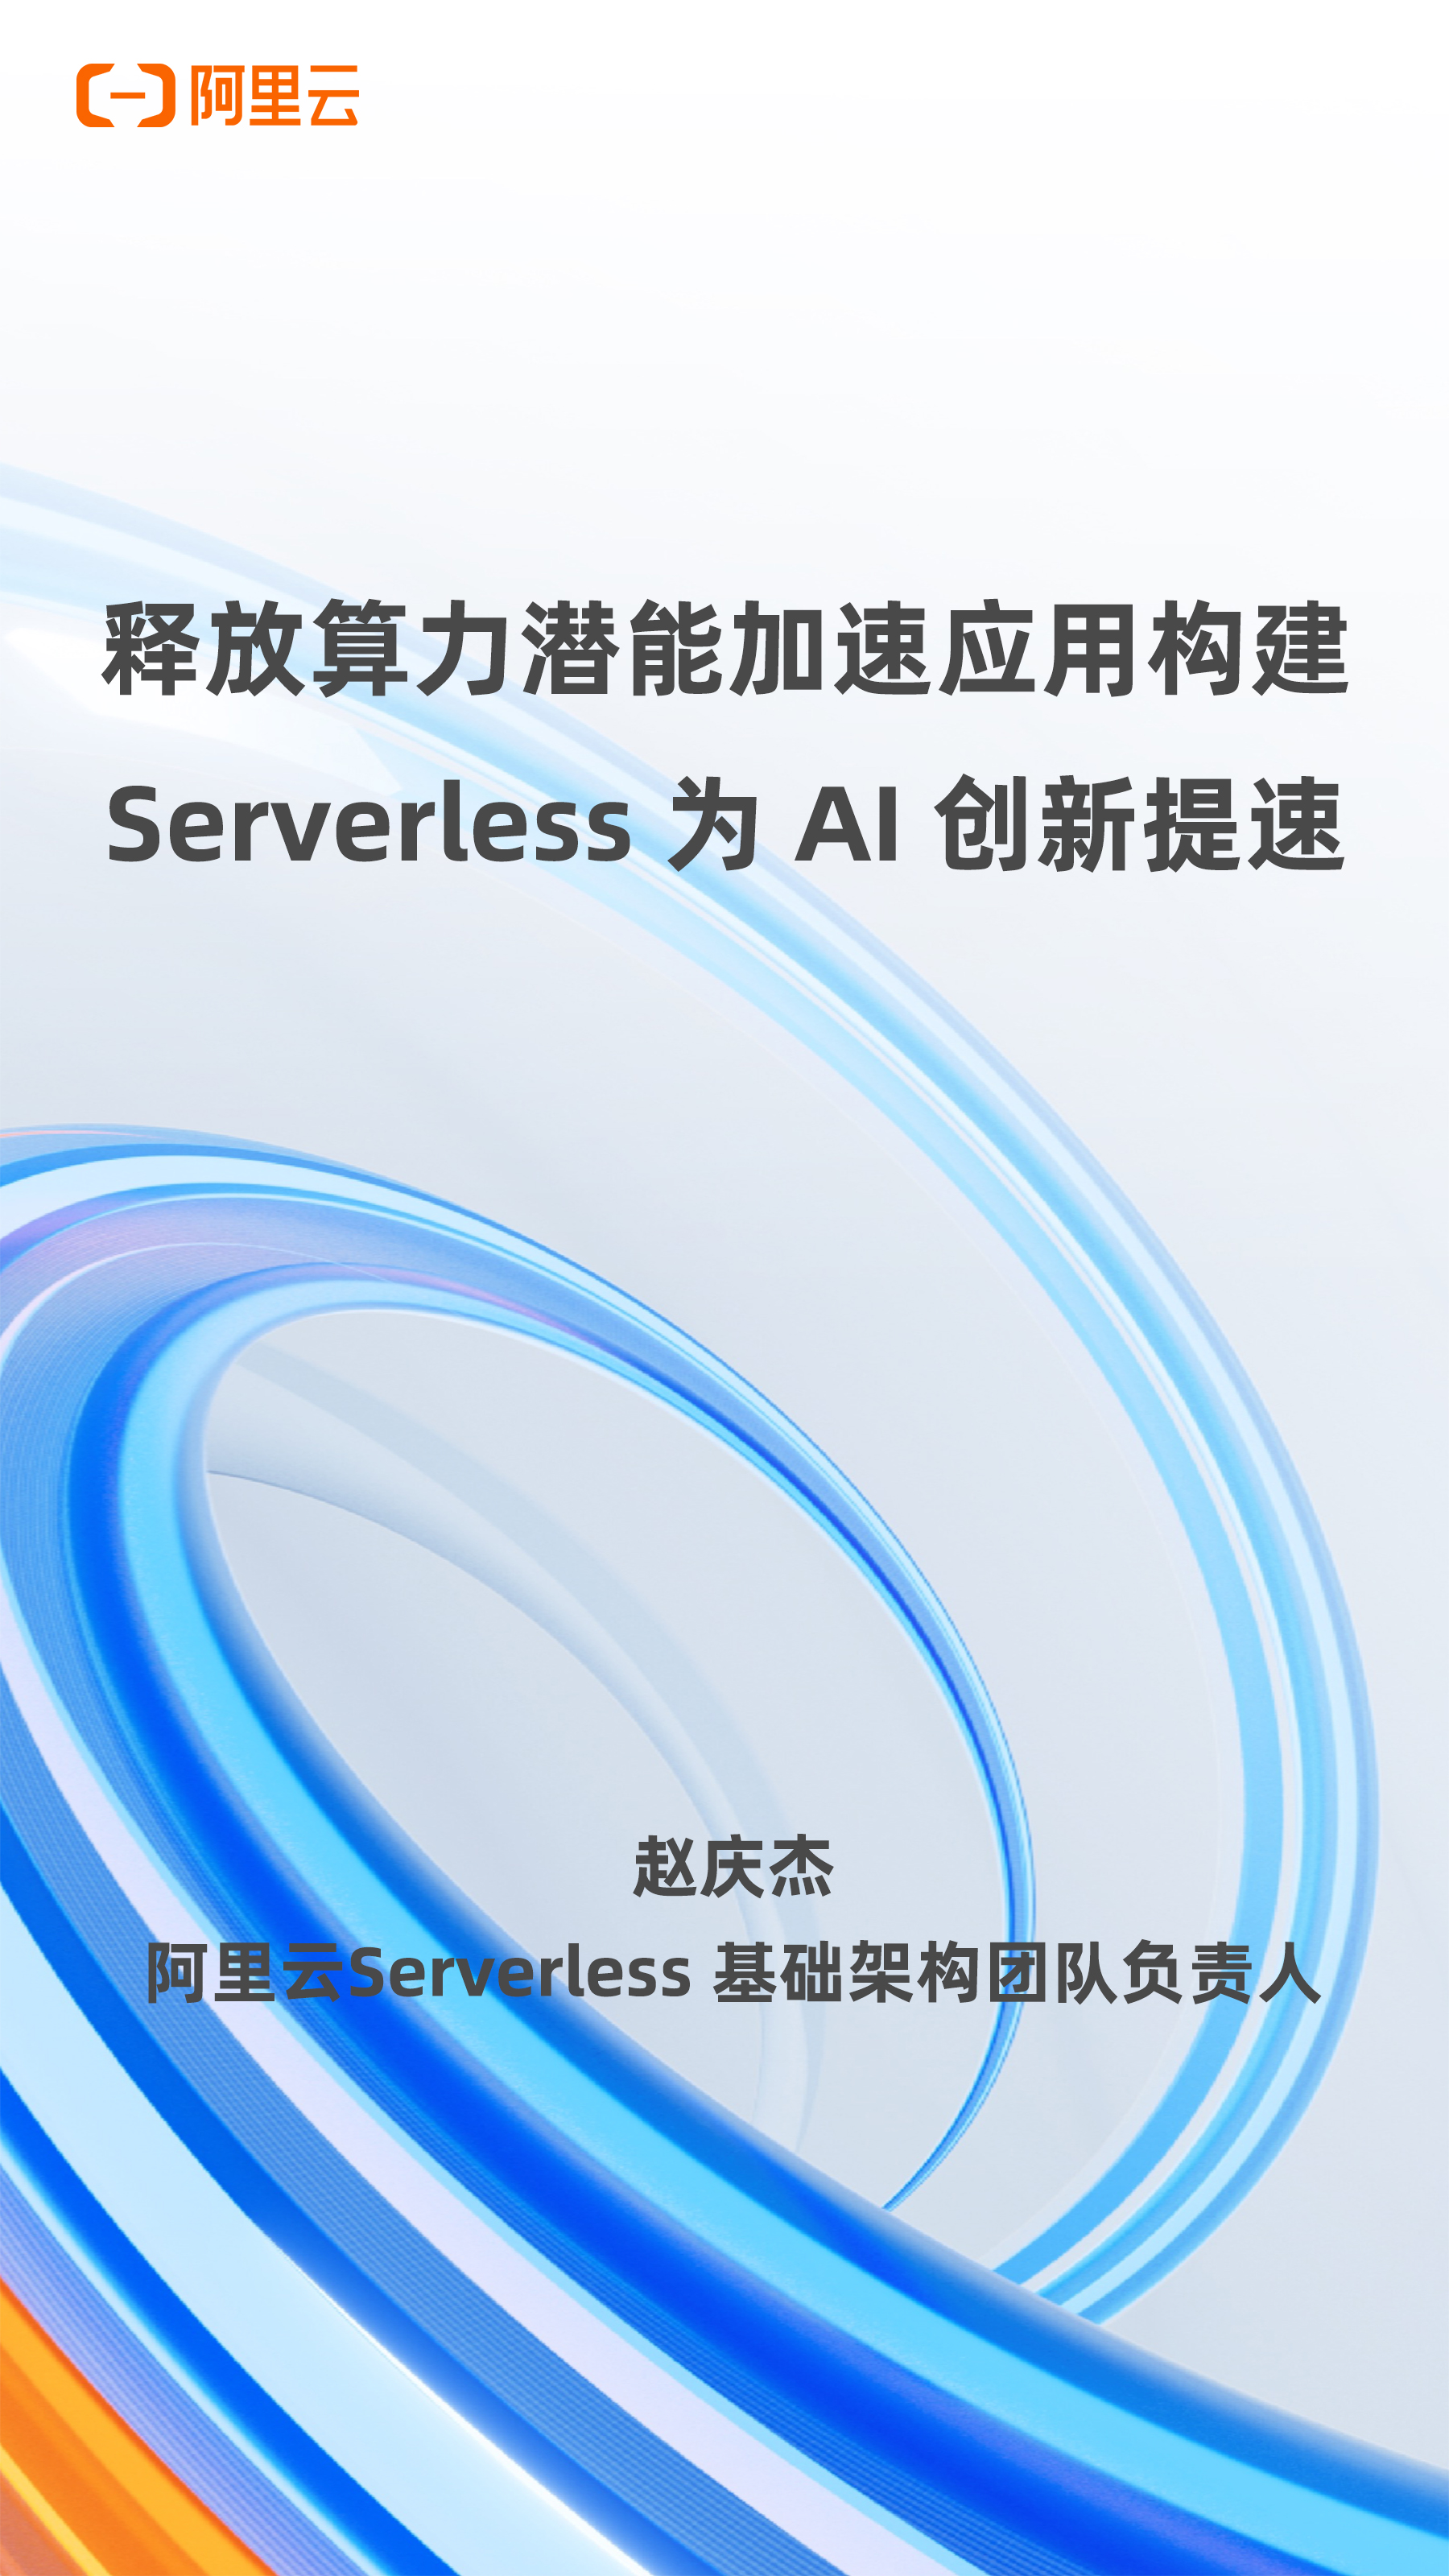 释放算力潜能加速应用构建Serverless为AI创新提速